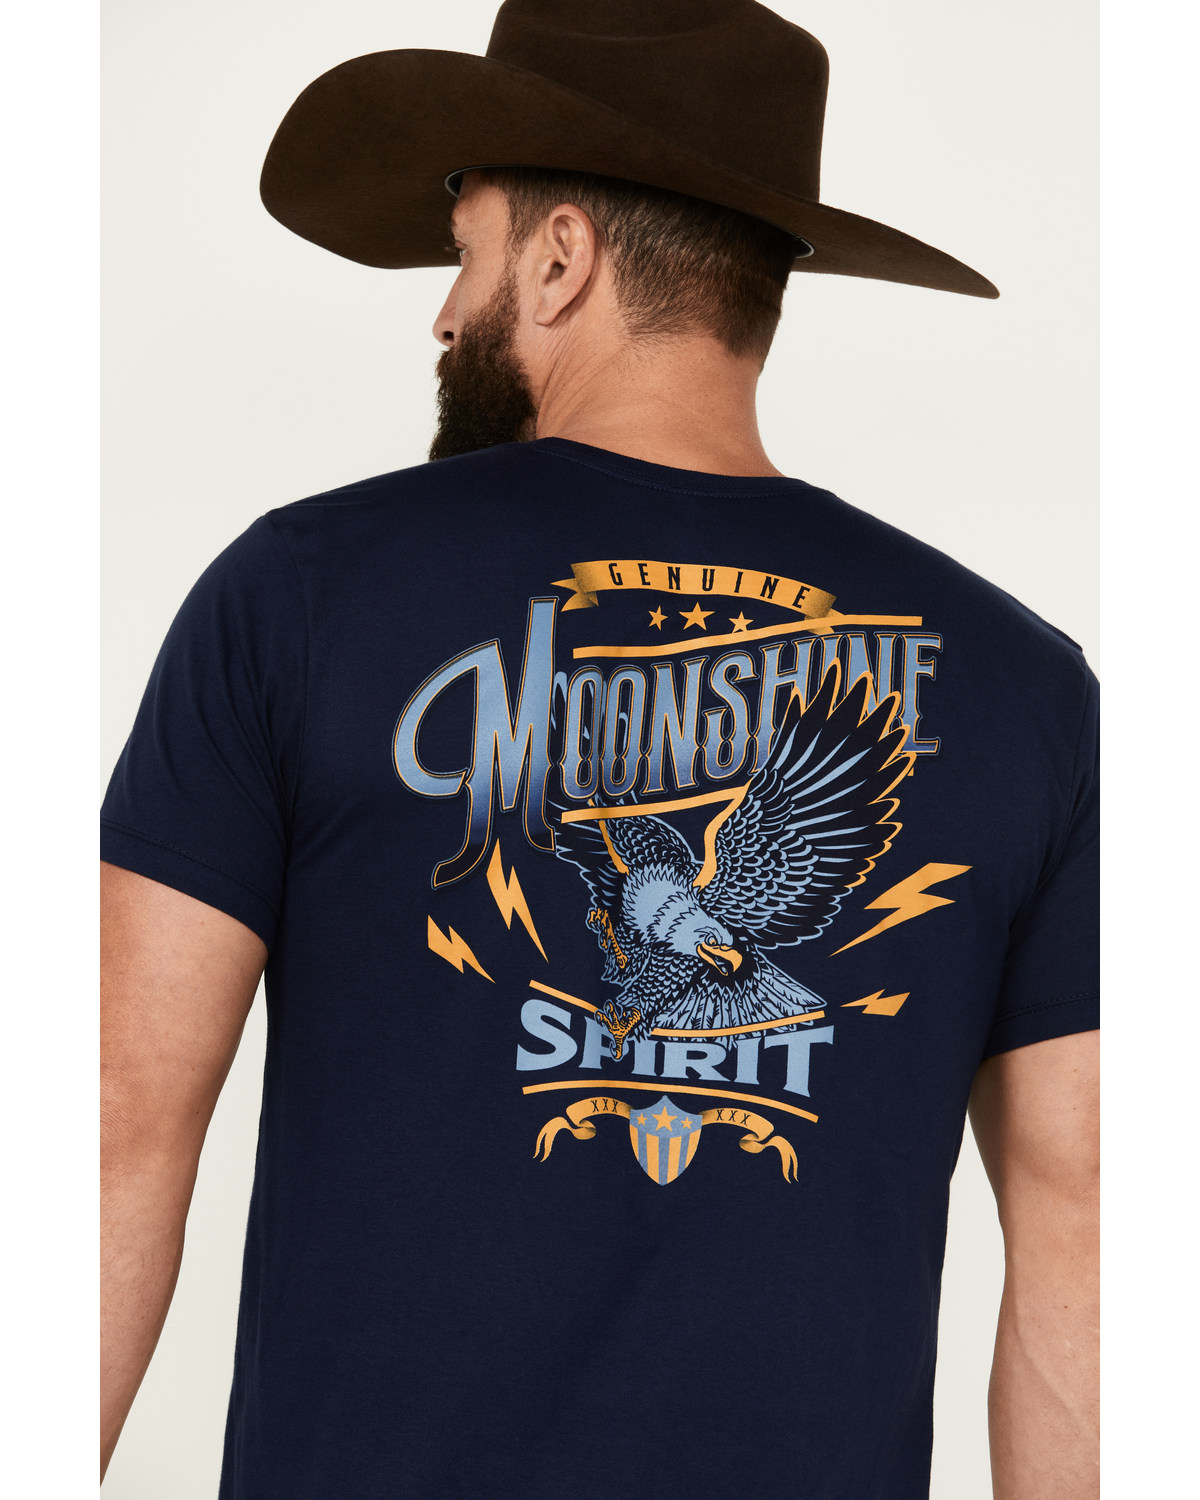 Moonshine Spirit Men's Genuine Short Sleeve T-Shirt